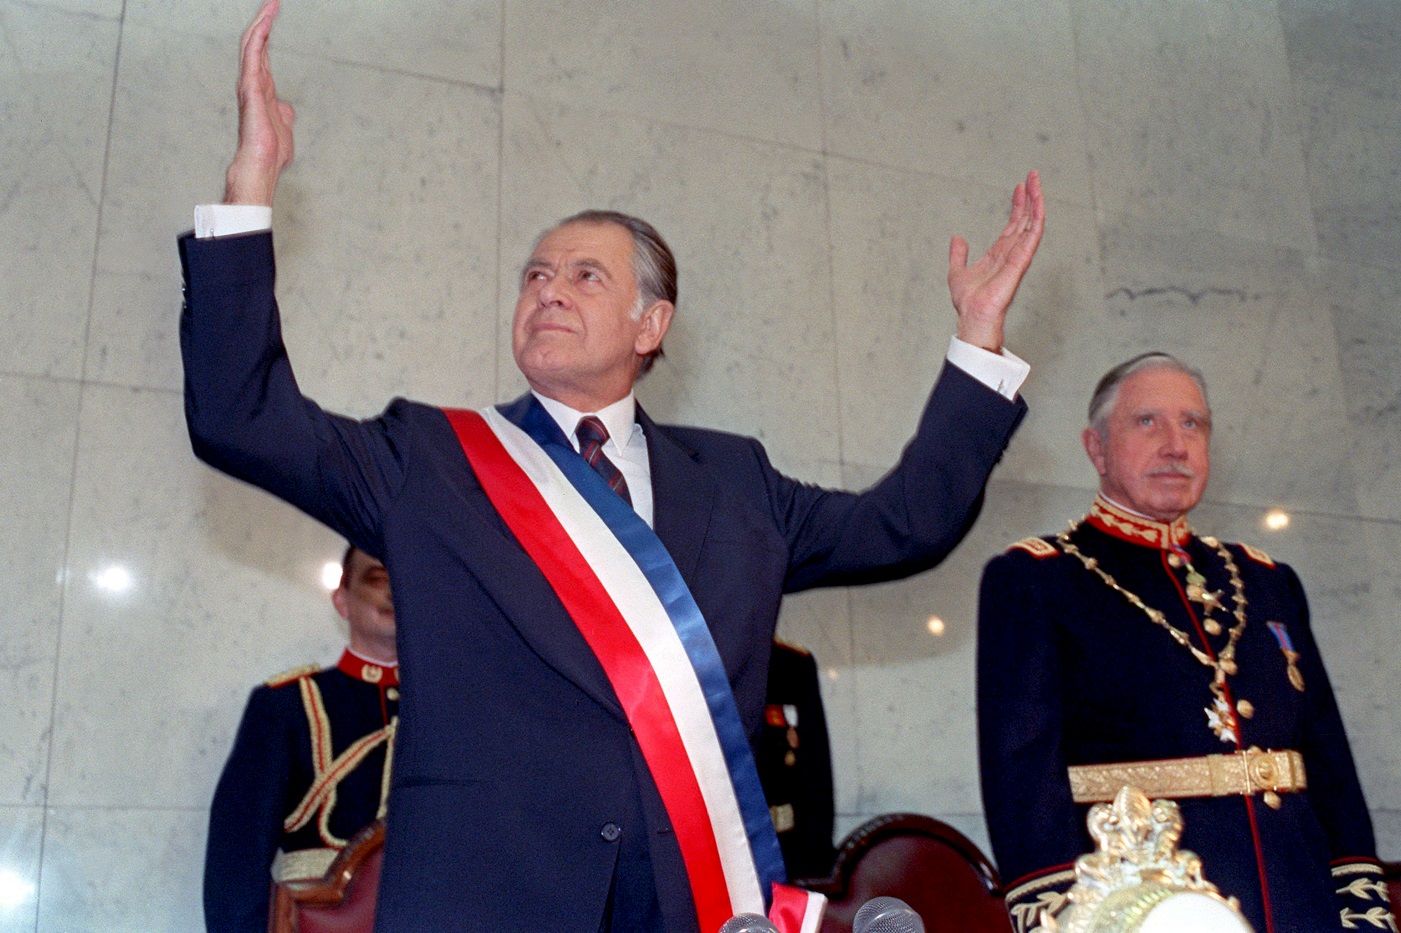 El presidente de Chile Patricio Aylwin Azócar y el general Augusto Pinochet, en la ceremonia de transmisión de mando, 11 de marzo de 1990. ARCHIVO